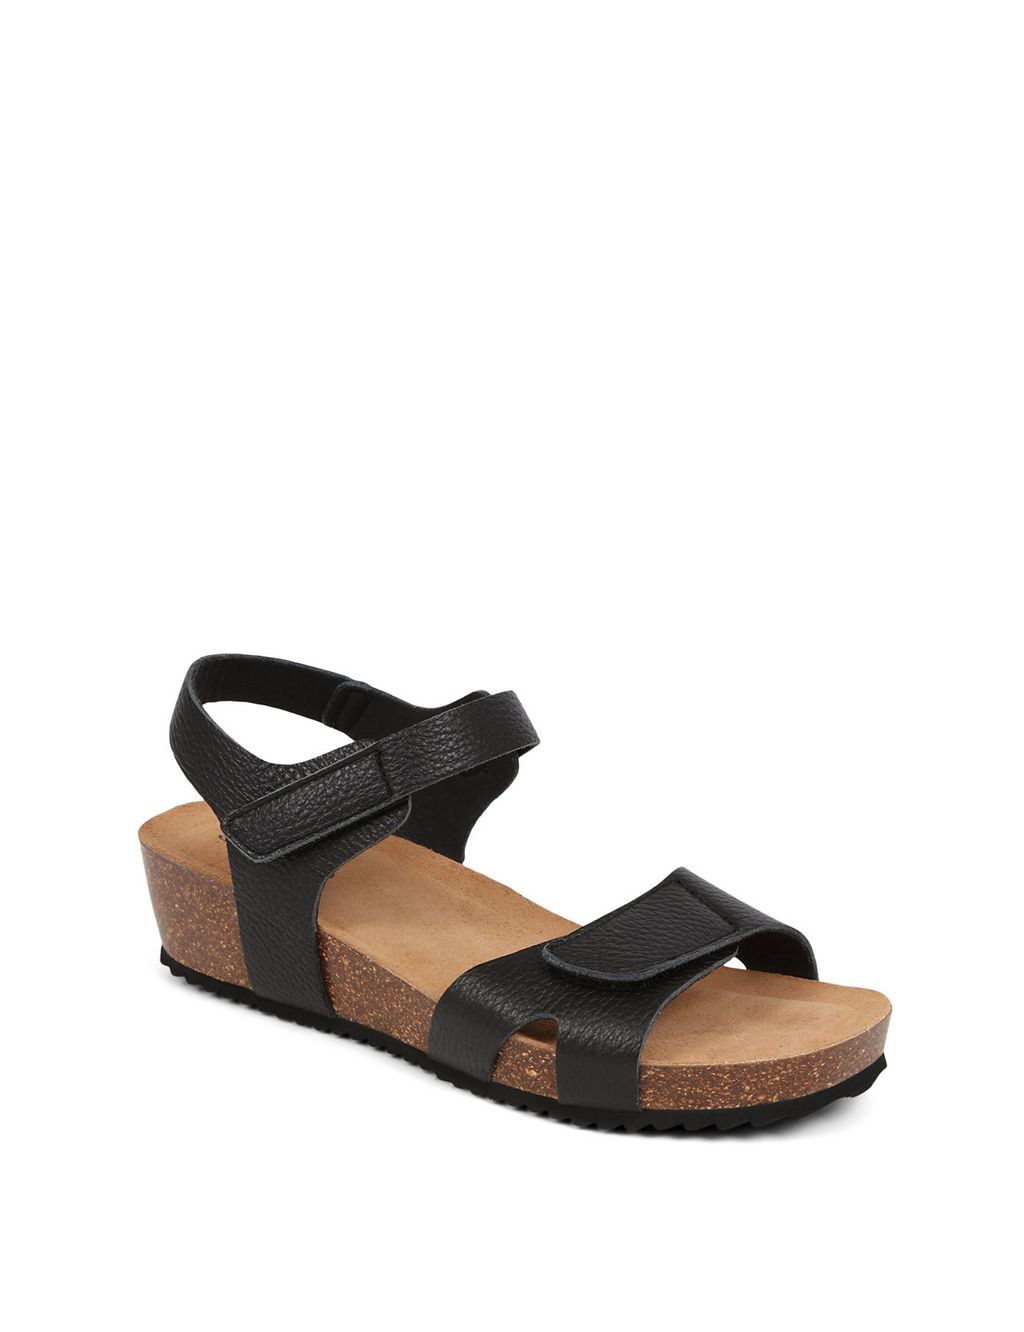 Leather Ankle Strap Flatform Sandals 6 of 7